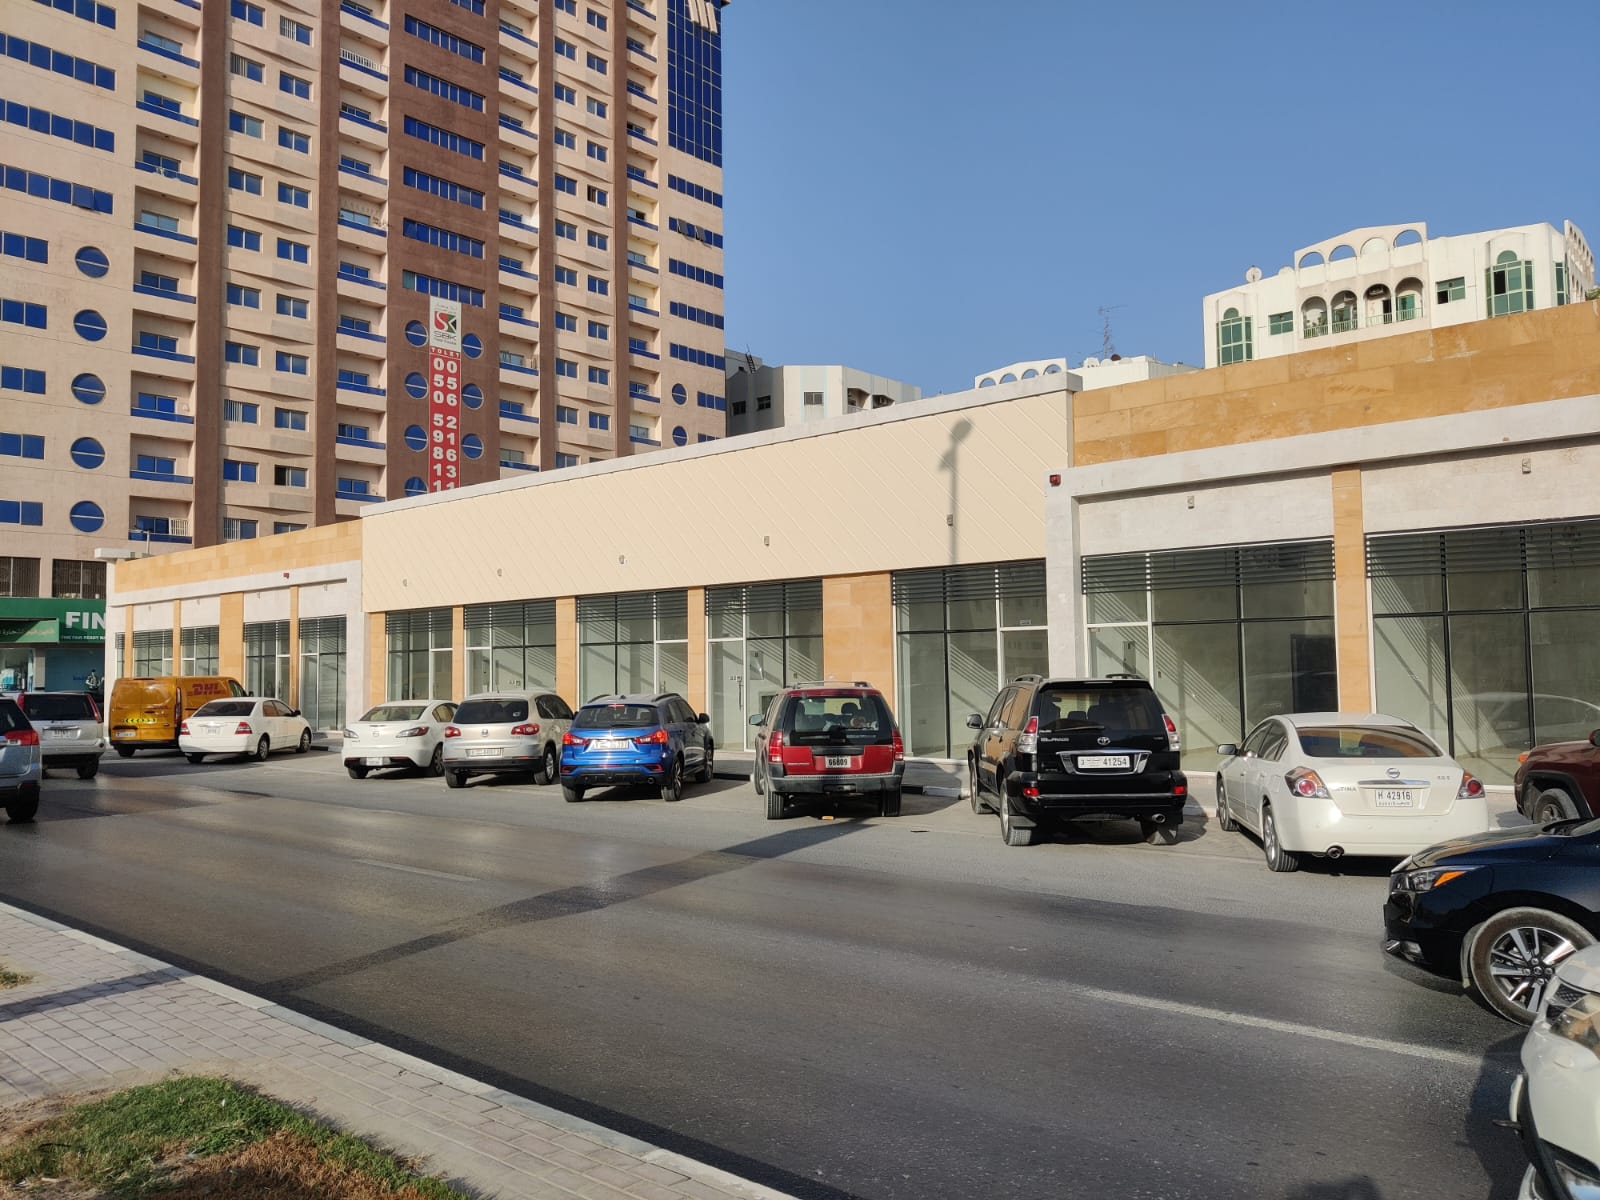 للإيجار محلات جديدة في الشارقة تقع في منطقة الناصرية موقع مميز على شارع الرئيسي كل محل فيها حمام 